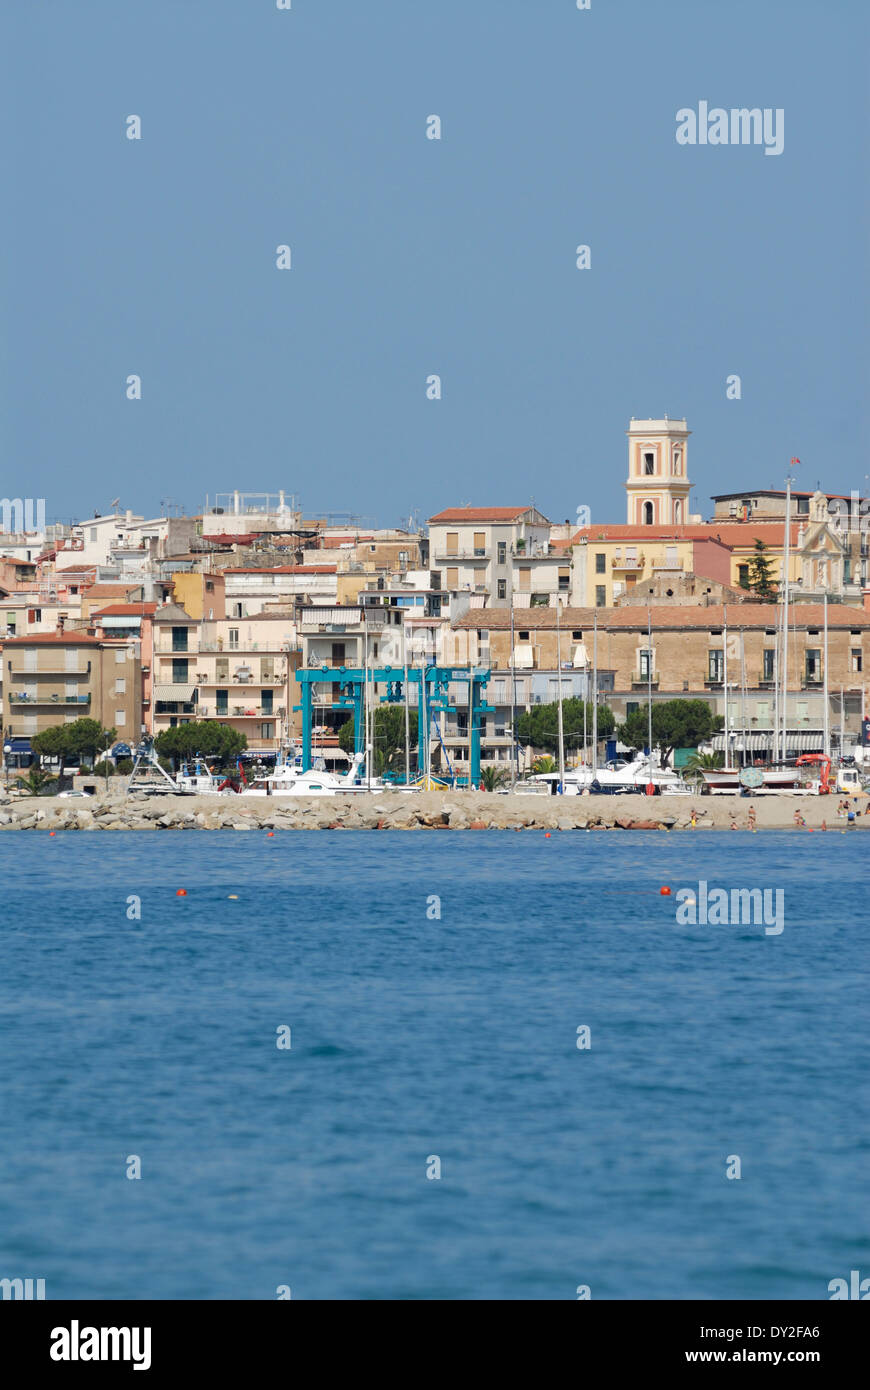 Cilento. Italy. The coastal town of Marina di Camerota. Stock Photo